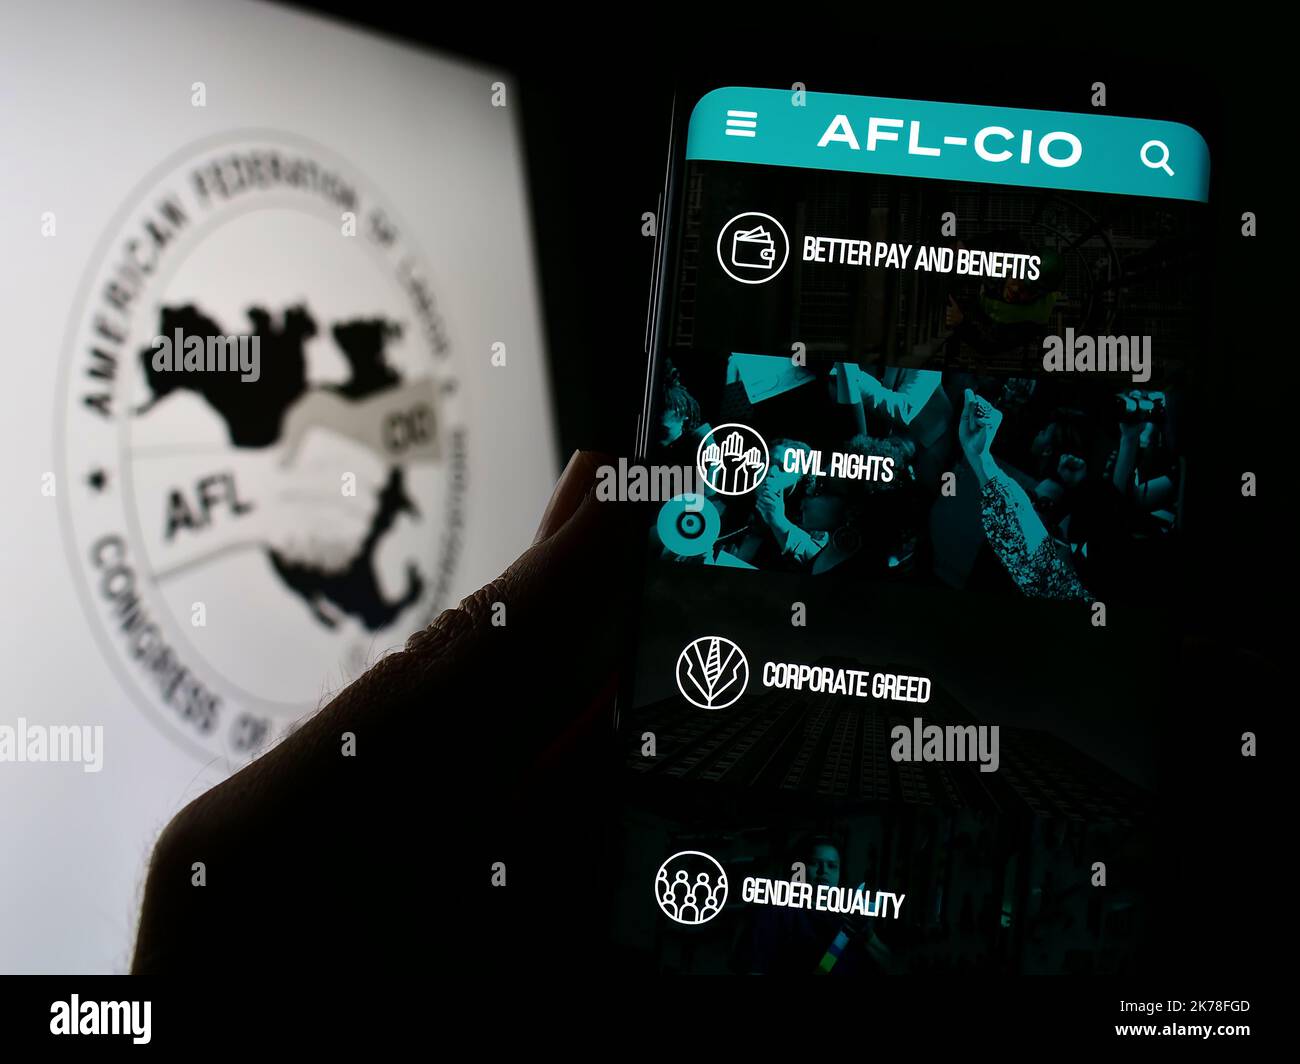 Personne tenant le téléphone portable avec la page web de l'American Union federation AFL-CIO à l'écran devant le logo. Concentrez-vous sur le centre de l'écran du téléphone. Banque D'Images